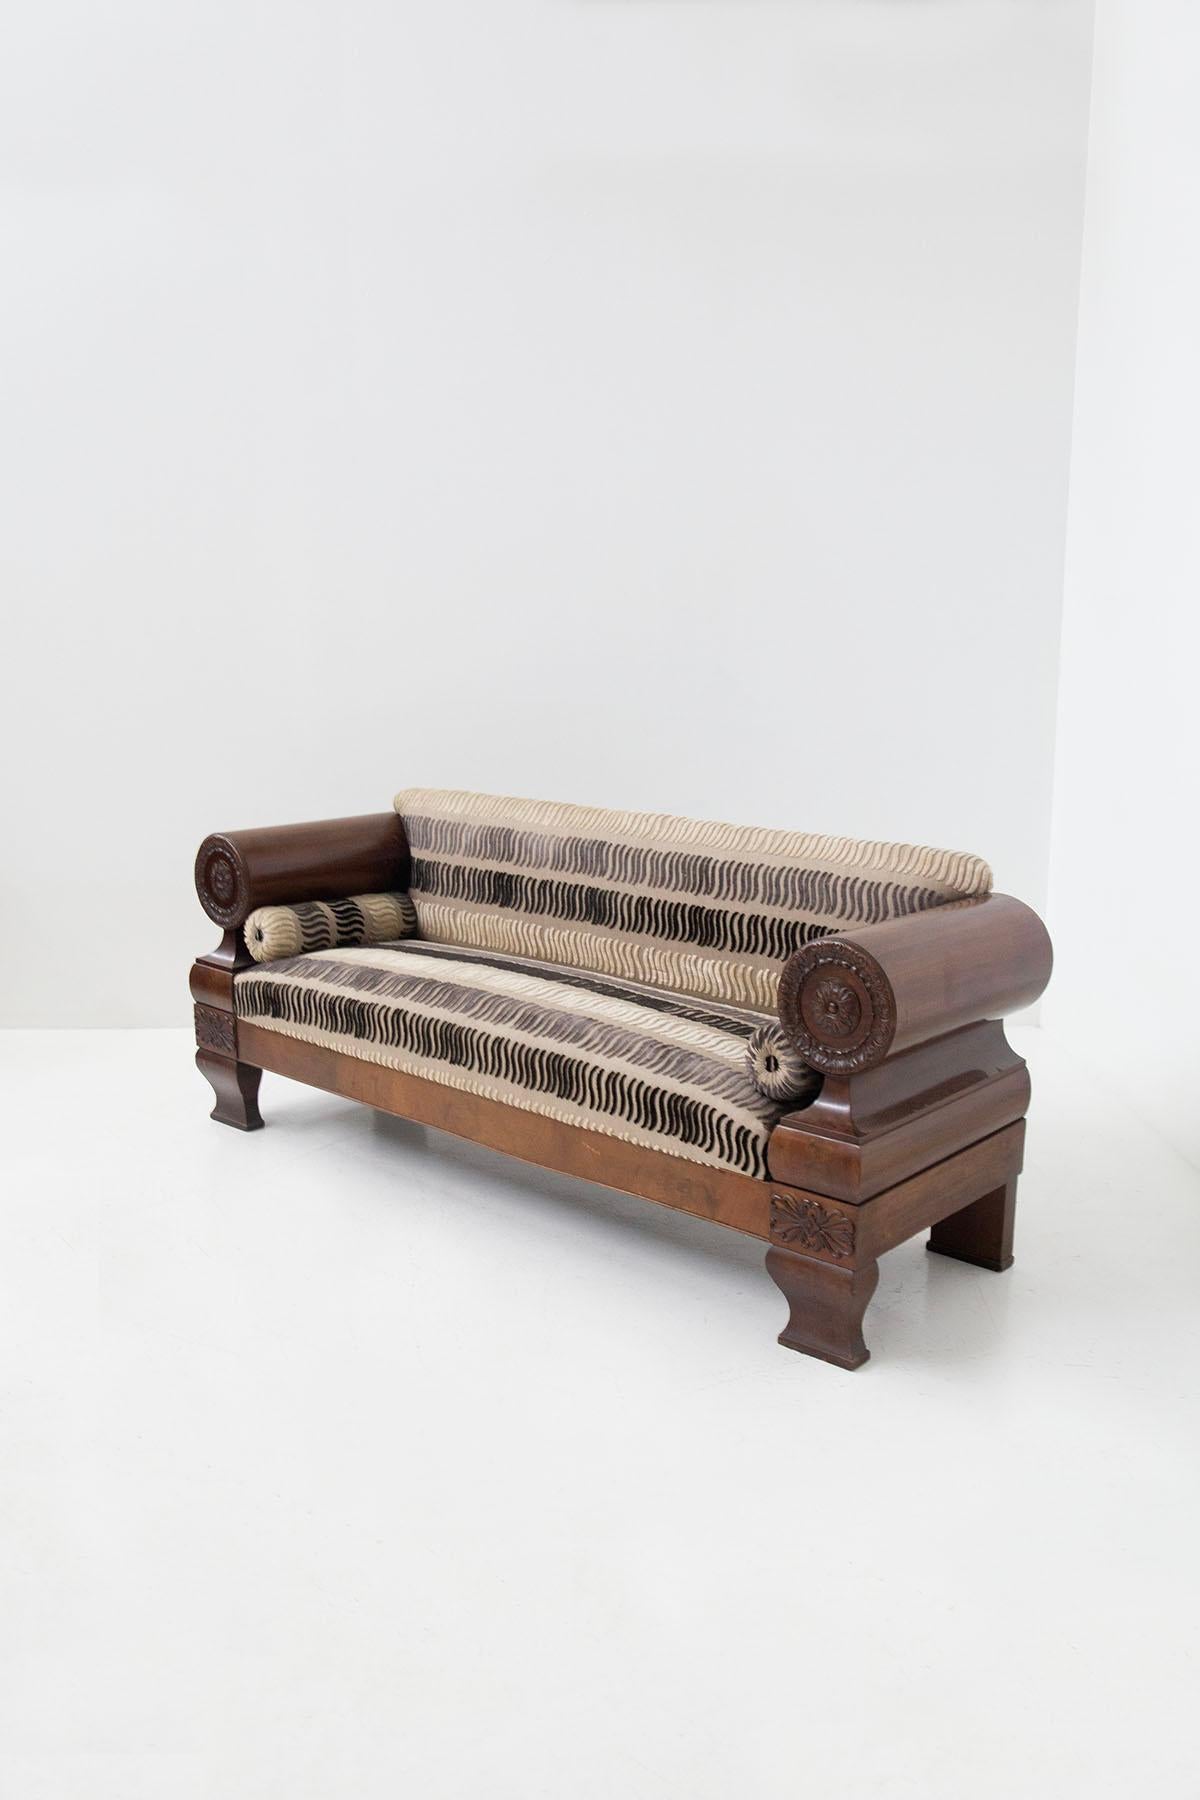 Impressionnant canapé Biedermeier d'origine nord-européenne du début des années 1900. Le majestueux canapé est doté d'une armature en bois colossale qui présente plusieurs caractéristiques particulières. On remarque sur les côtés deux grands